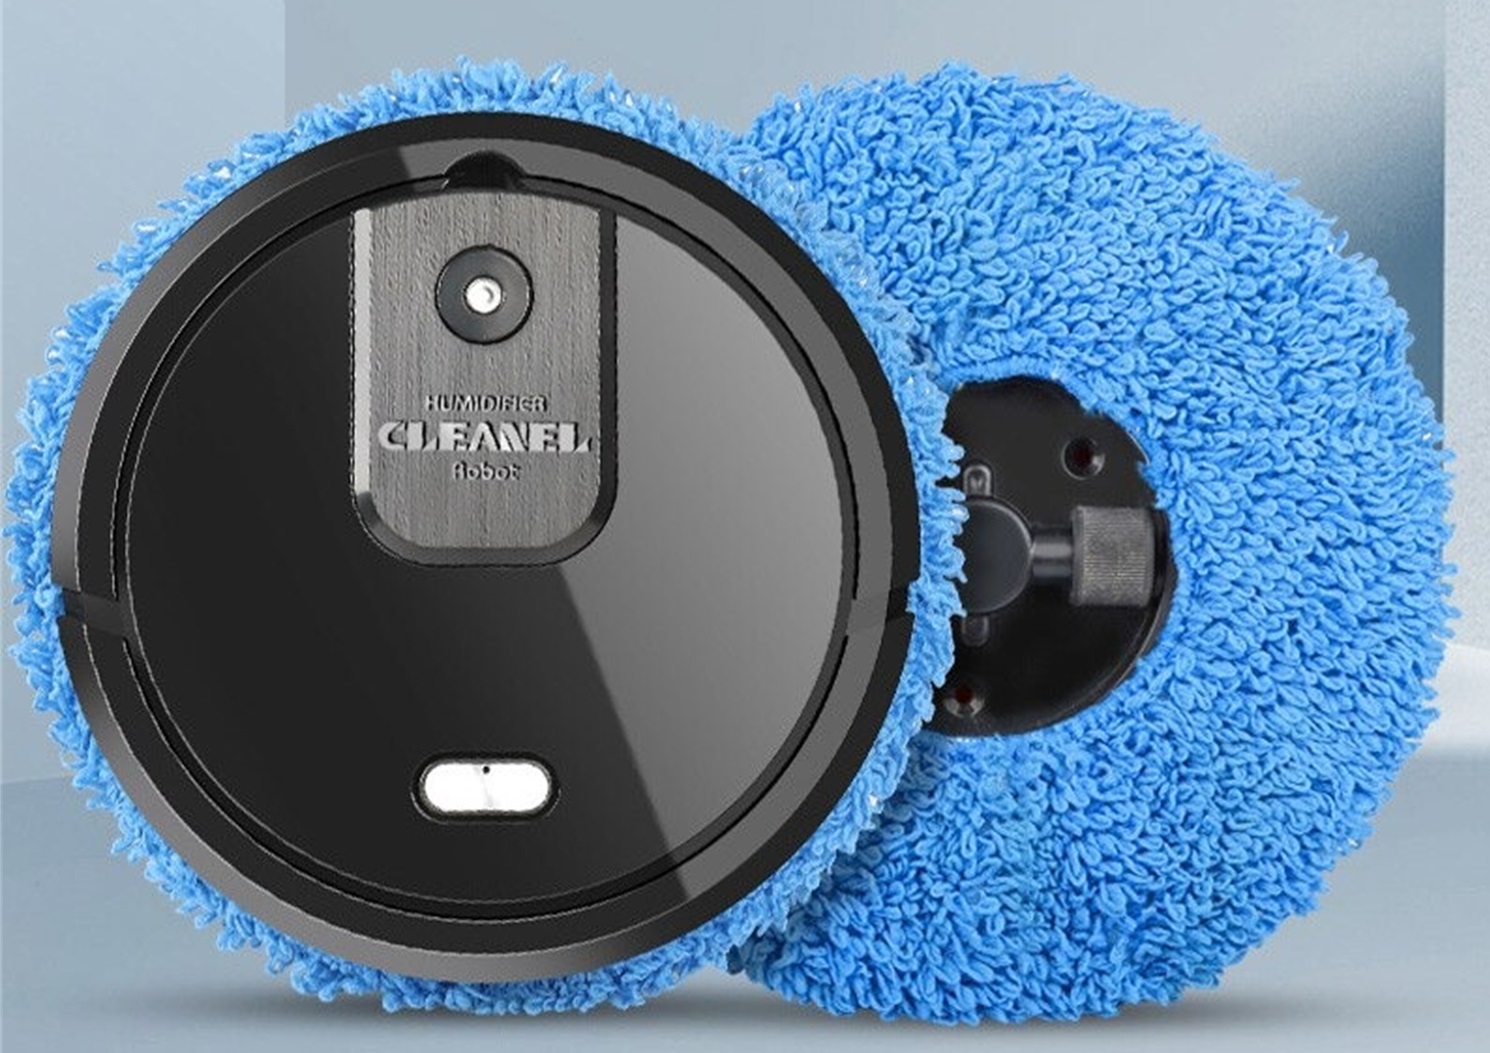 O robô varredor Ximeijie Cleaner Robot Humidifier está na promoção do AliExpress por R$ 148,00